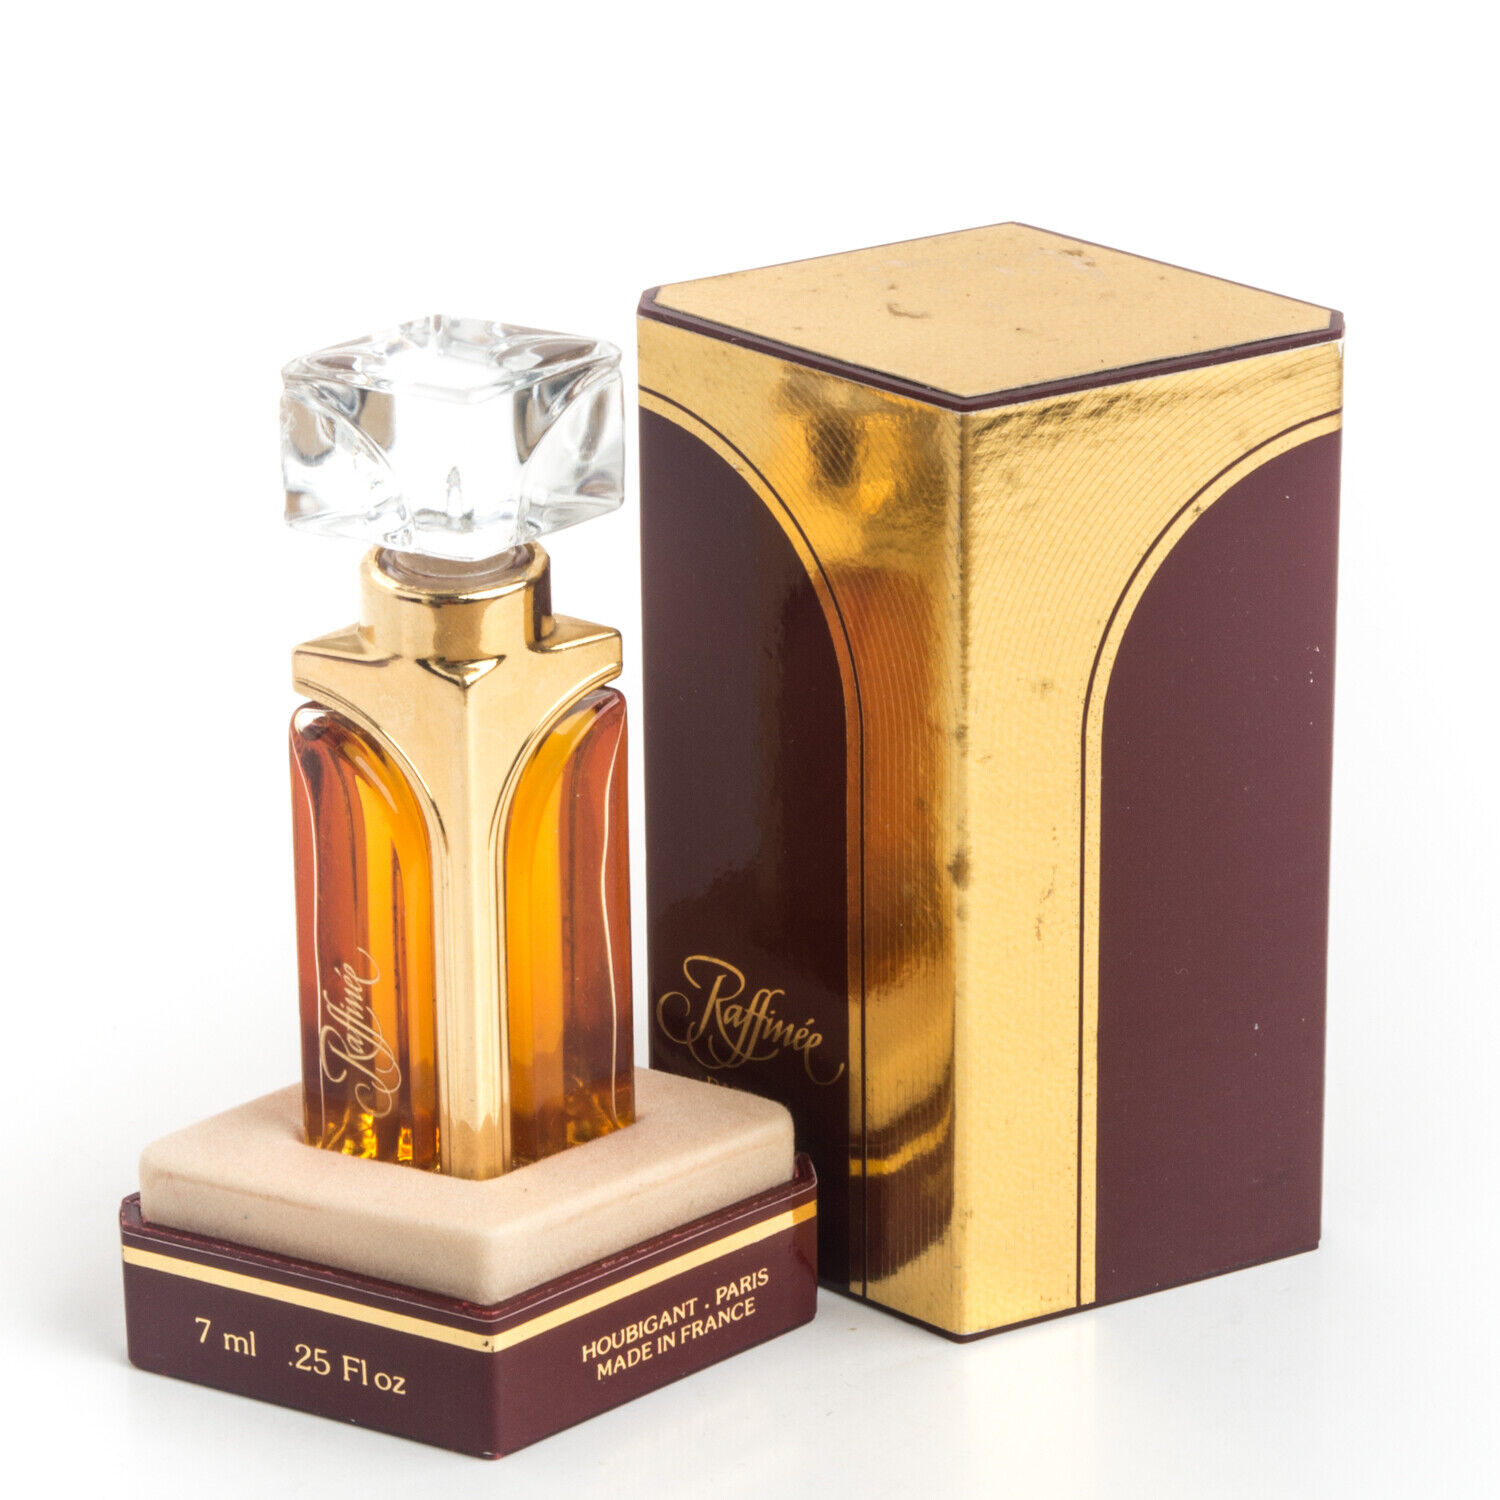 Houbigant Raffinee Parfum .25OZ 7ml Pure Perfume Extrait Vintage Original